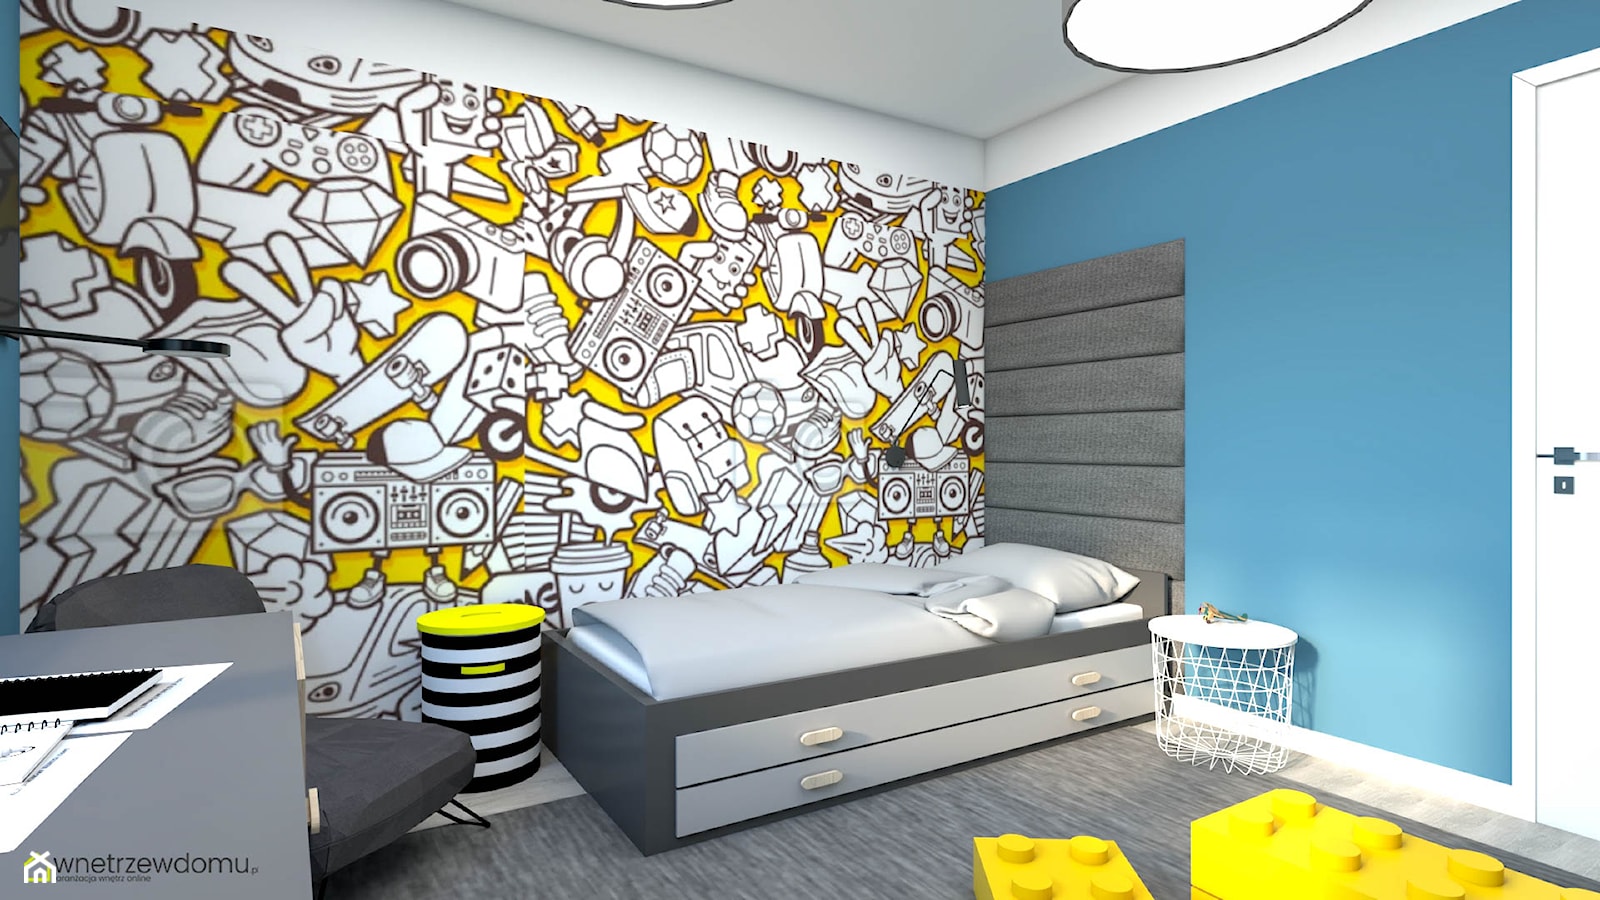 Żółto-niebieski, energetyczny pokój dla chłopca - zdjęcie od wnetrzewdomu - Homebook